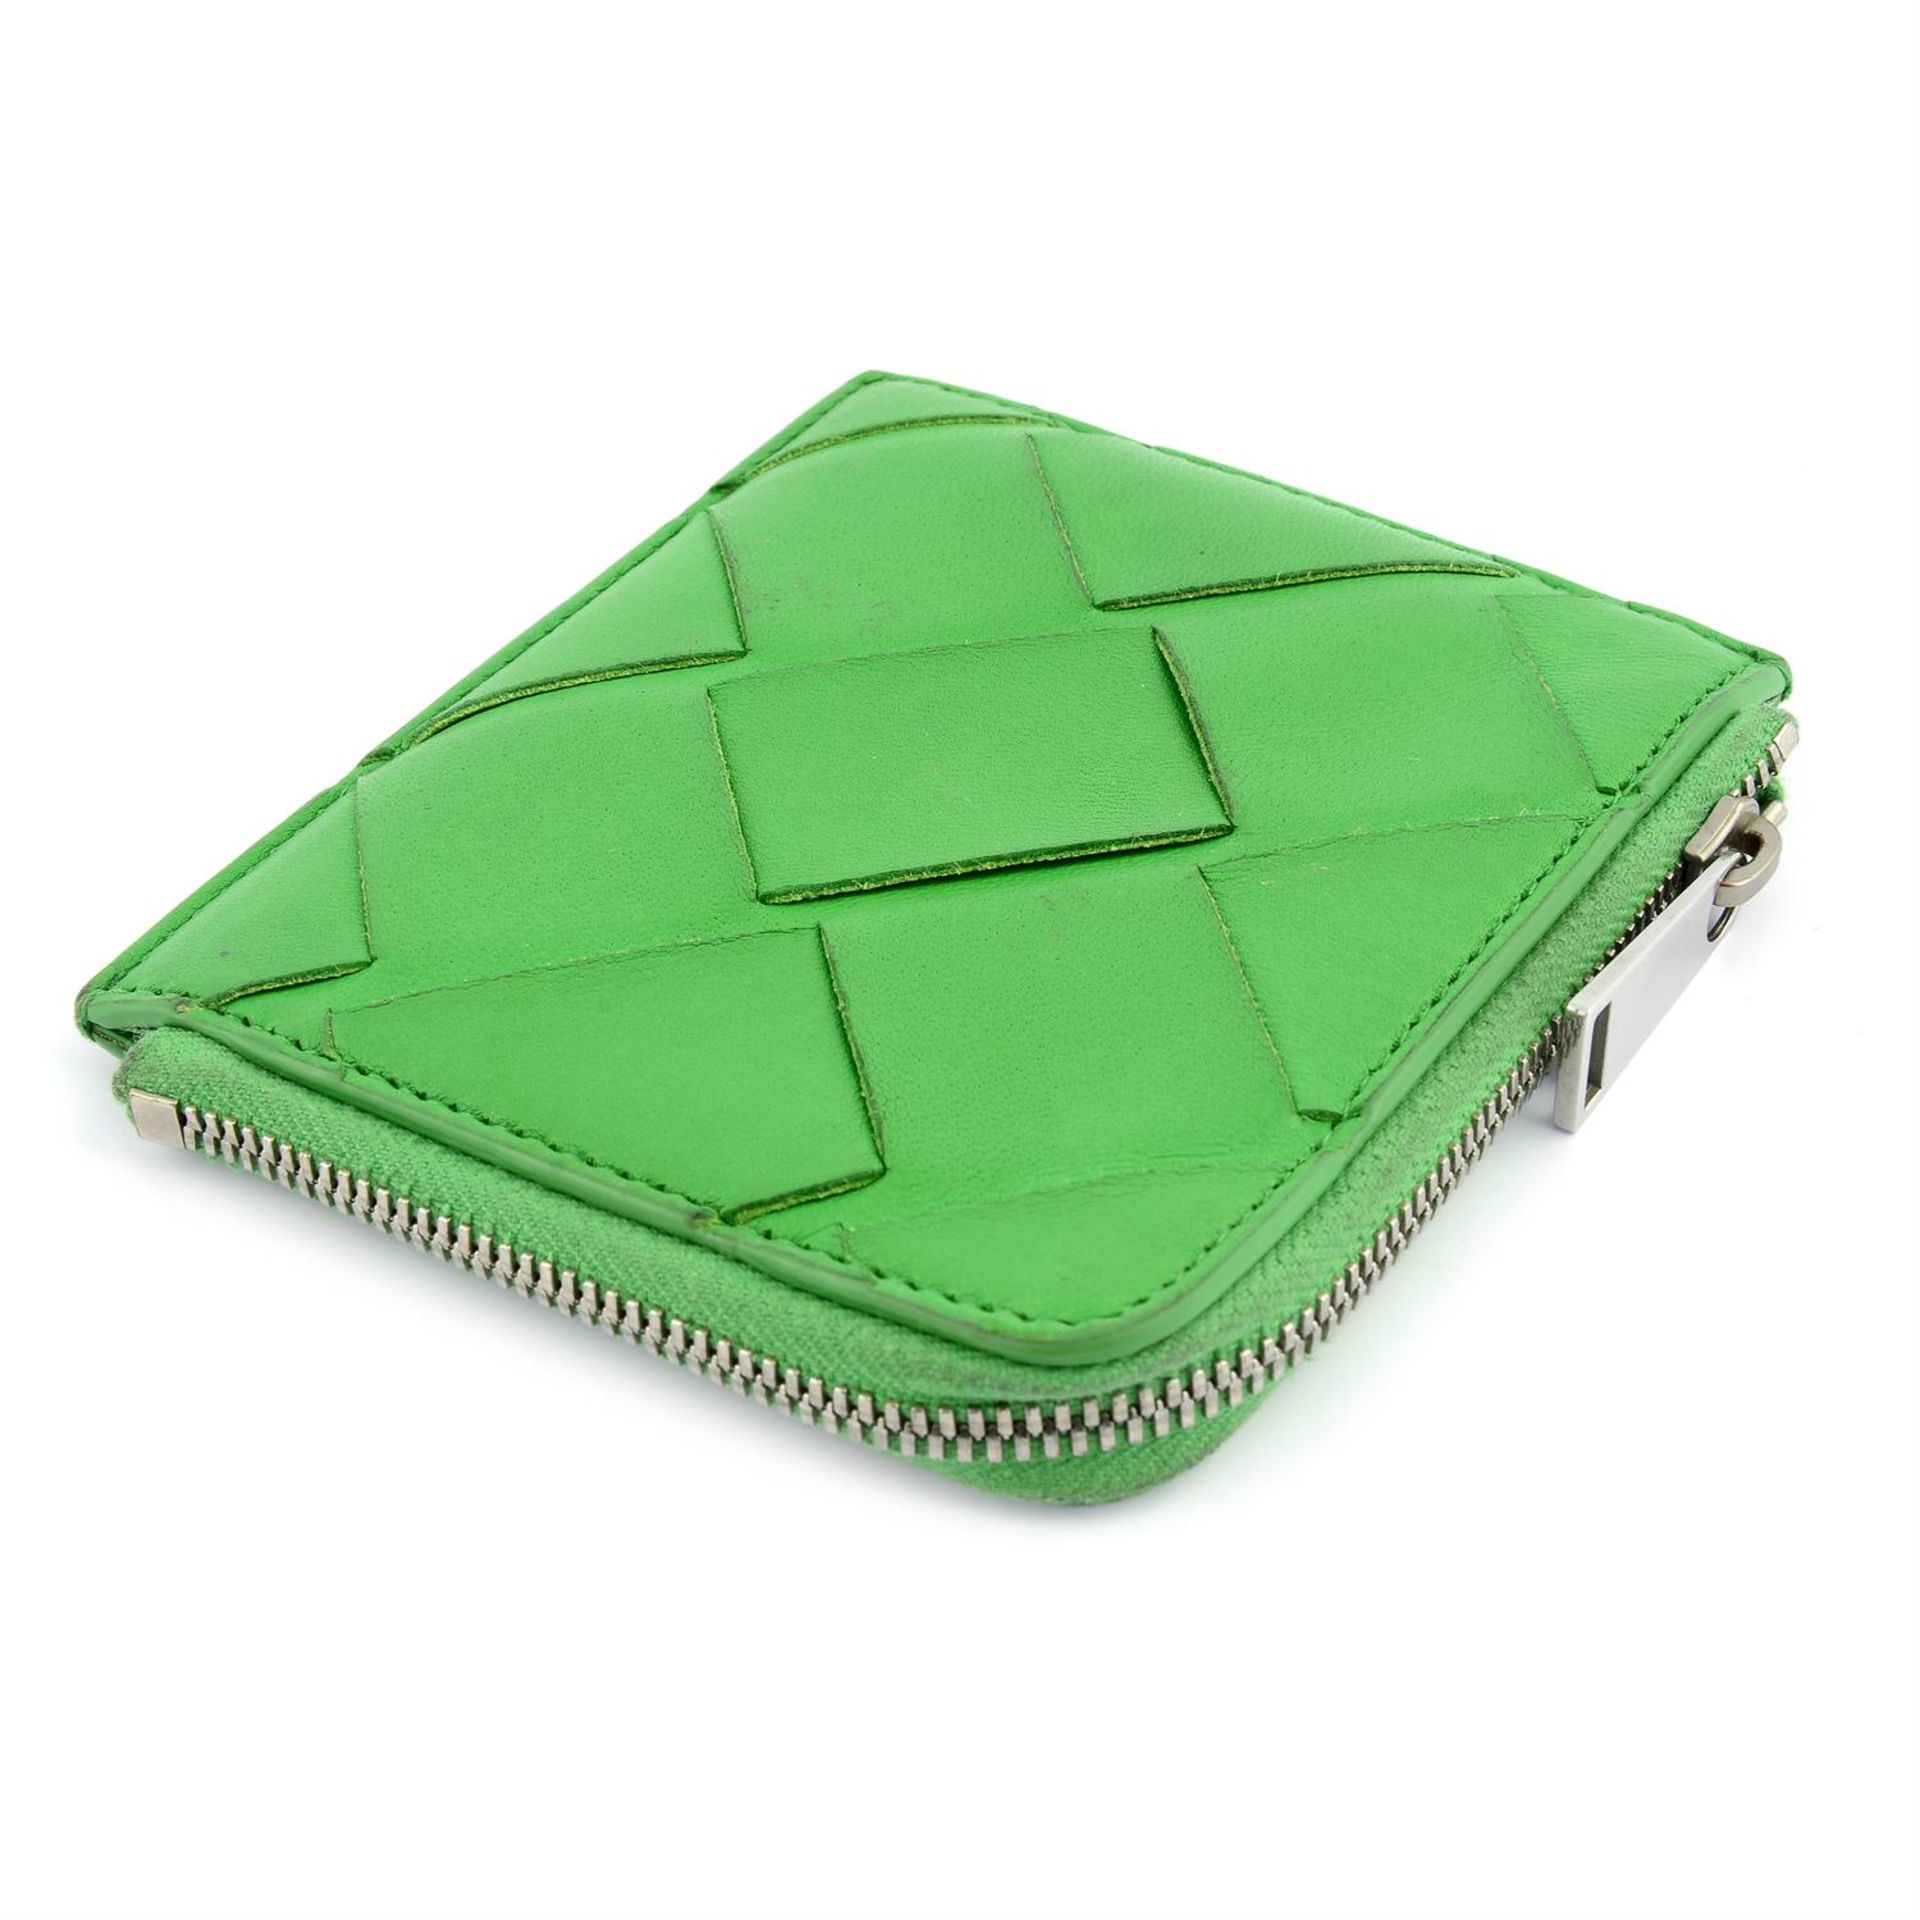 BOTTEGA VENETA - a small green Intrecciato leather coin purse. - Image 3 of 4